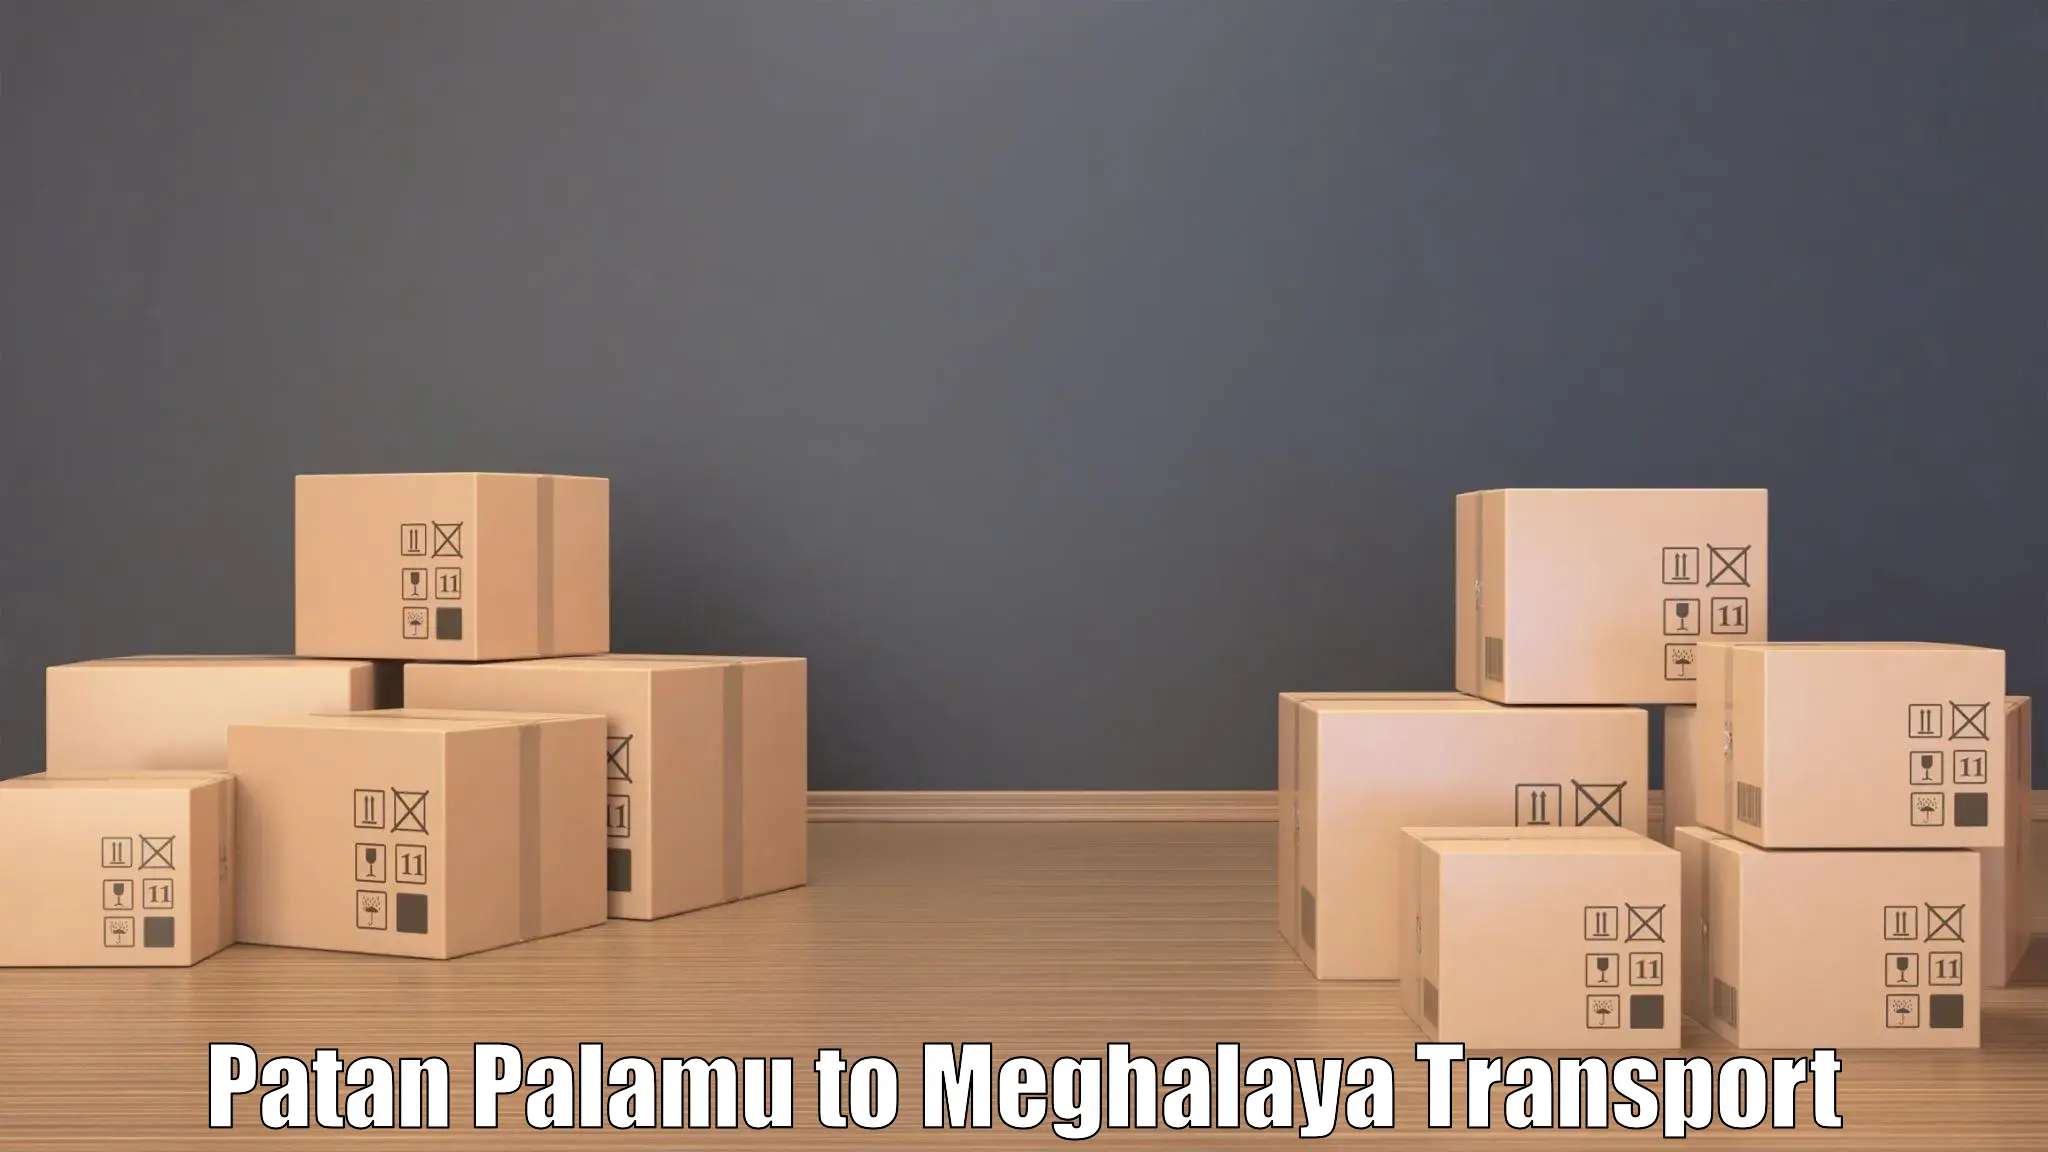 Two wheeler parcel service Patan Palamu to Dkhiah West